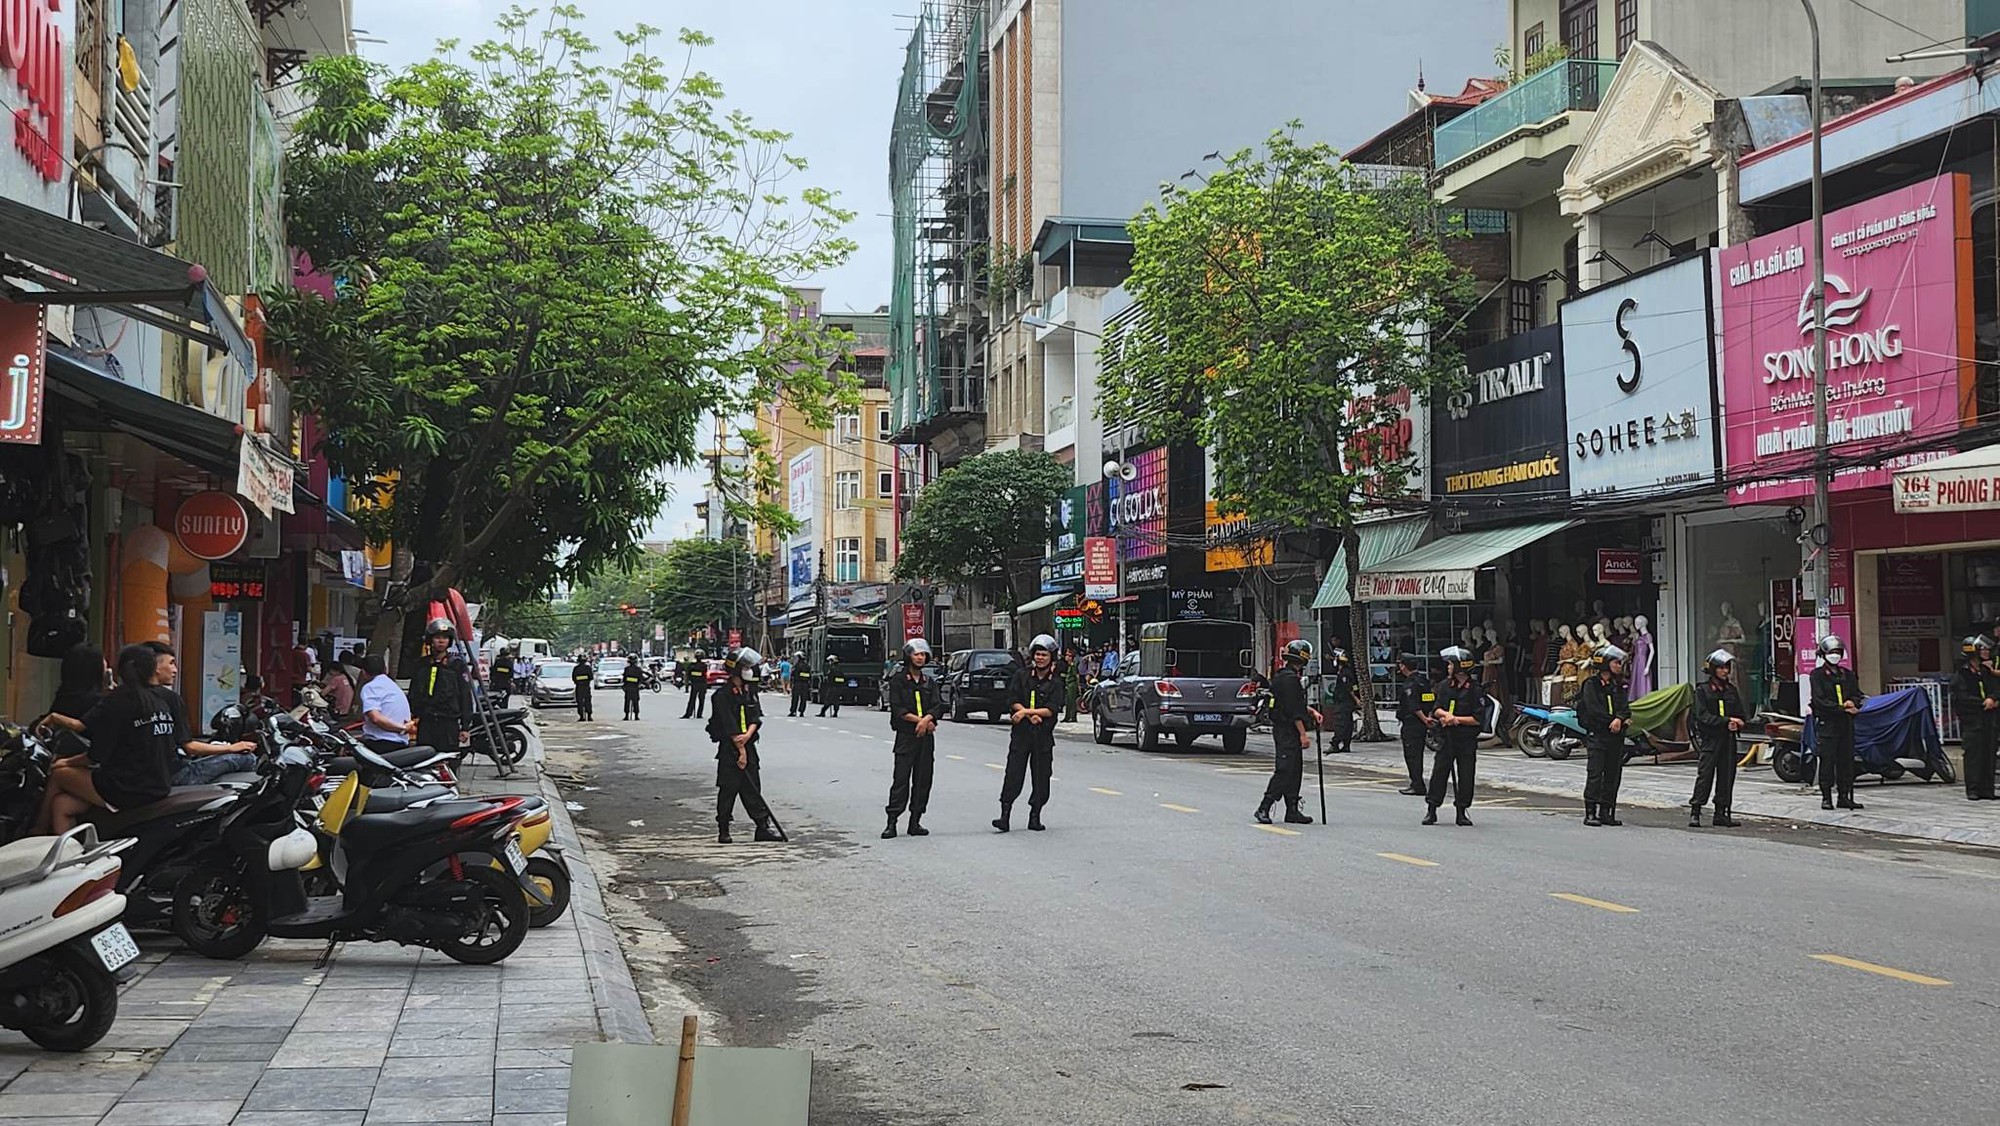 Hàng chục cảnh sát xuất hiện trước nhà trùm giang hồ Tuấn thần đèn ở Thanh Hóa - Ảnh 3.